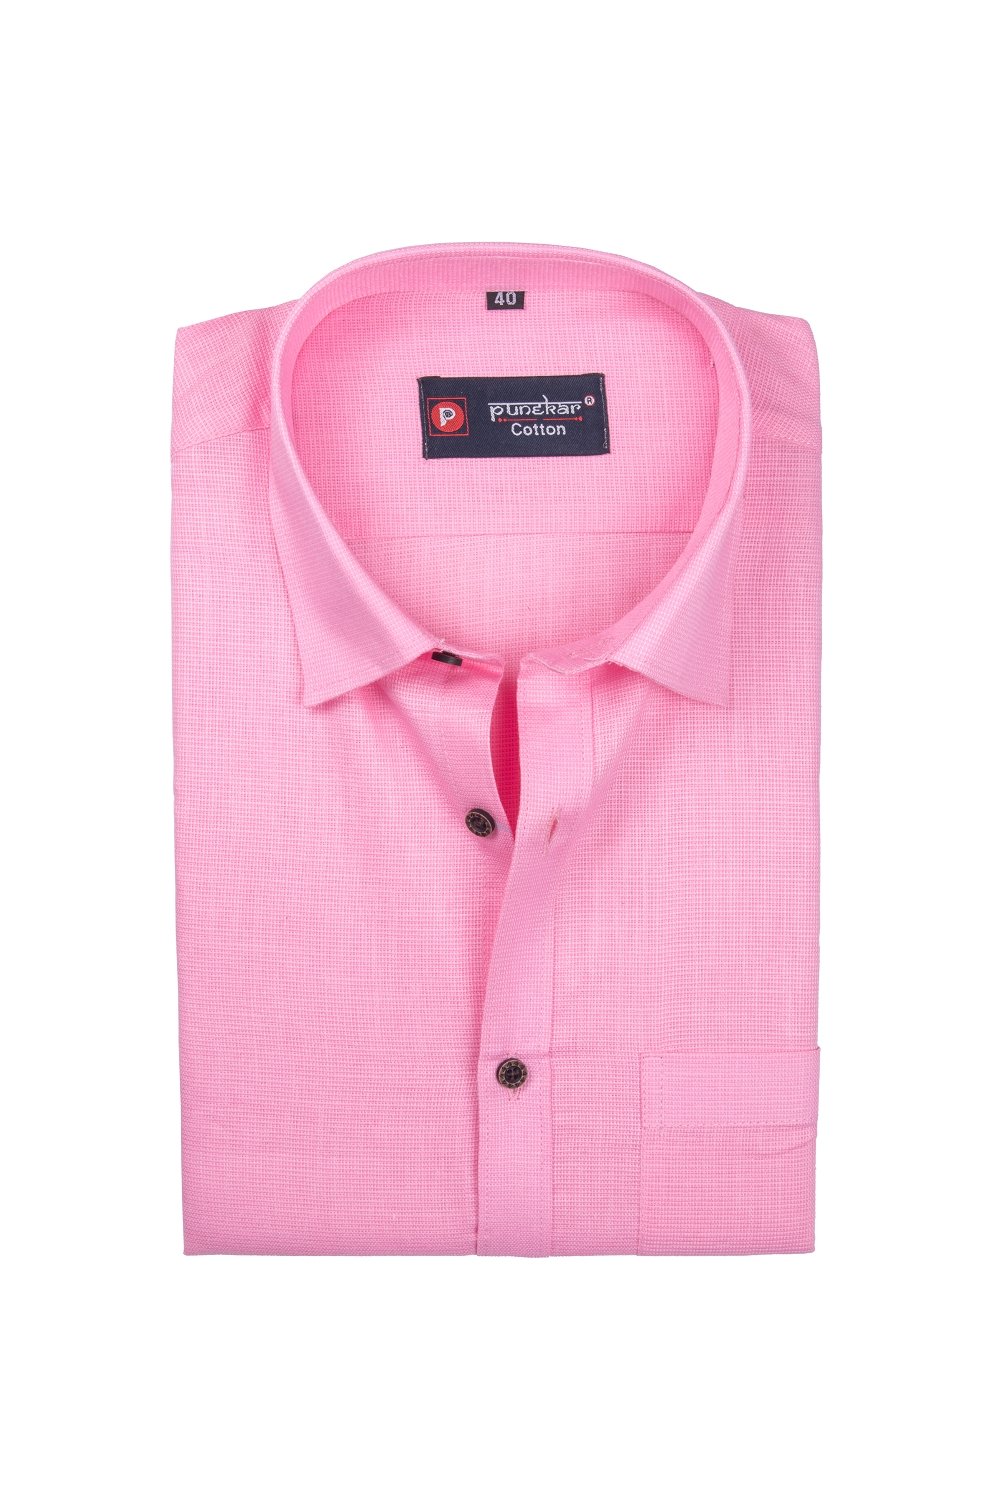 Punekar Cotton Pink Color Silky Linen Cotton Shirt for Men's. - Punekar Cotton